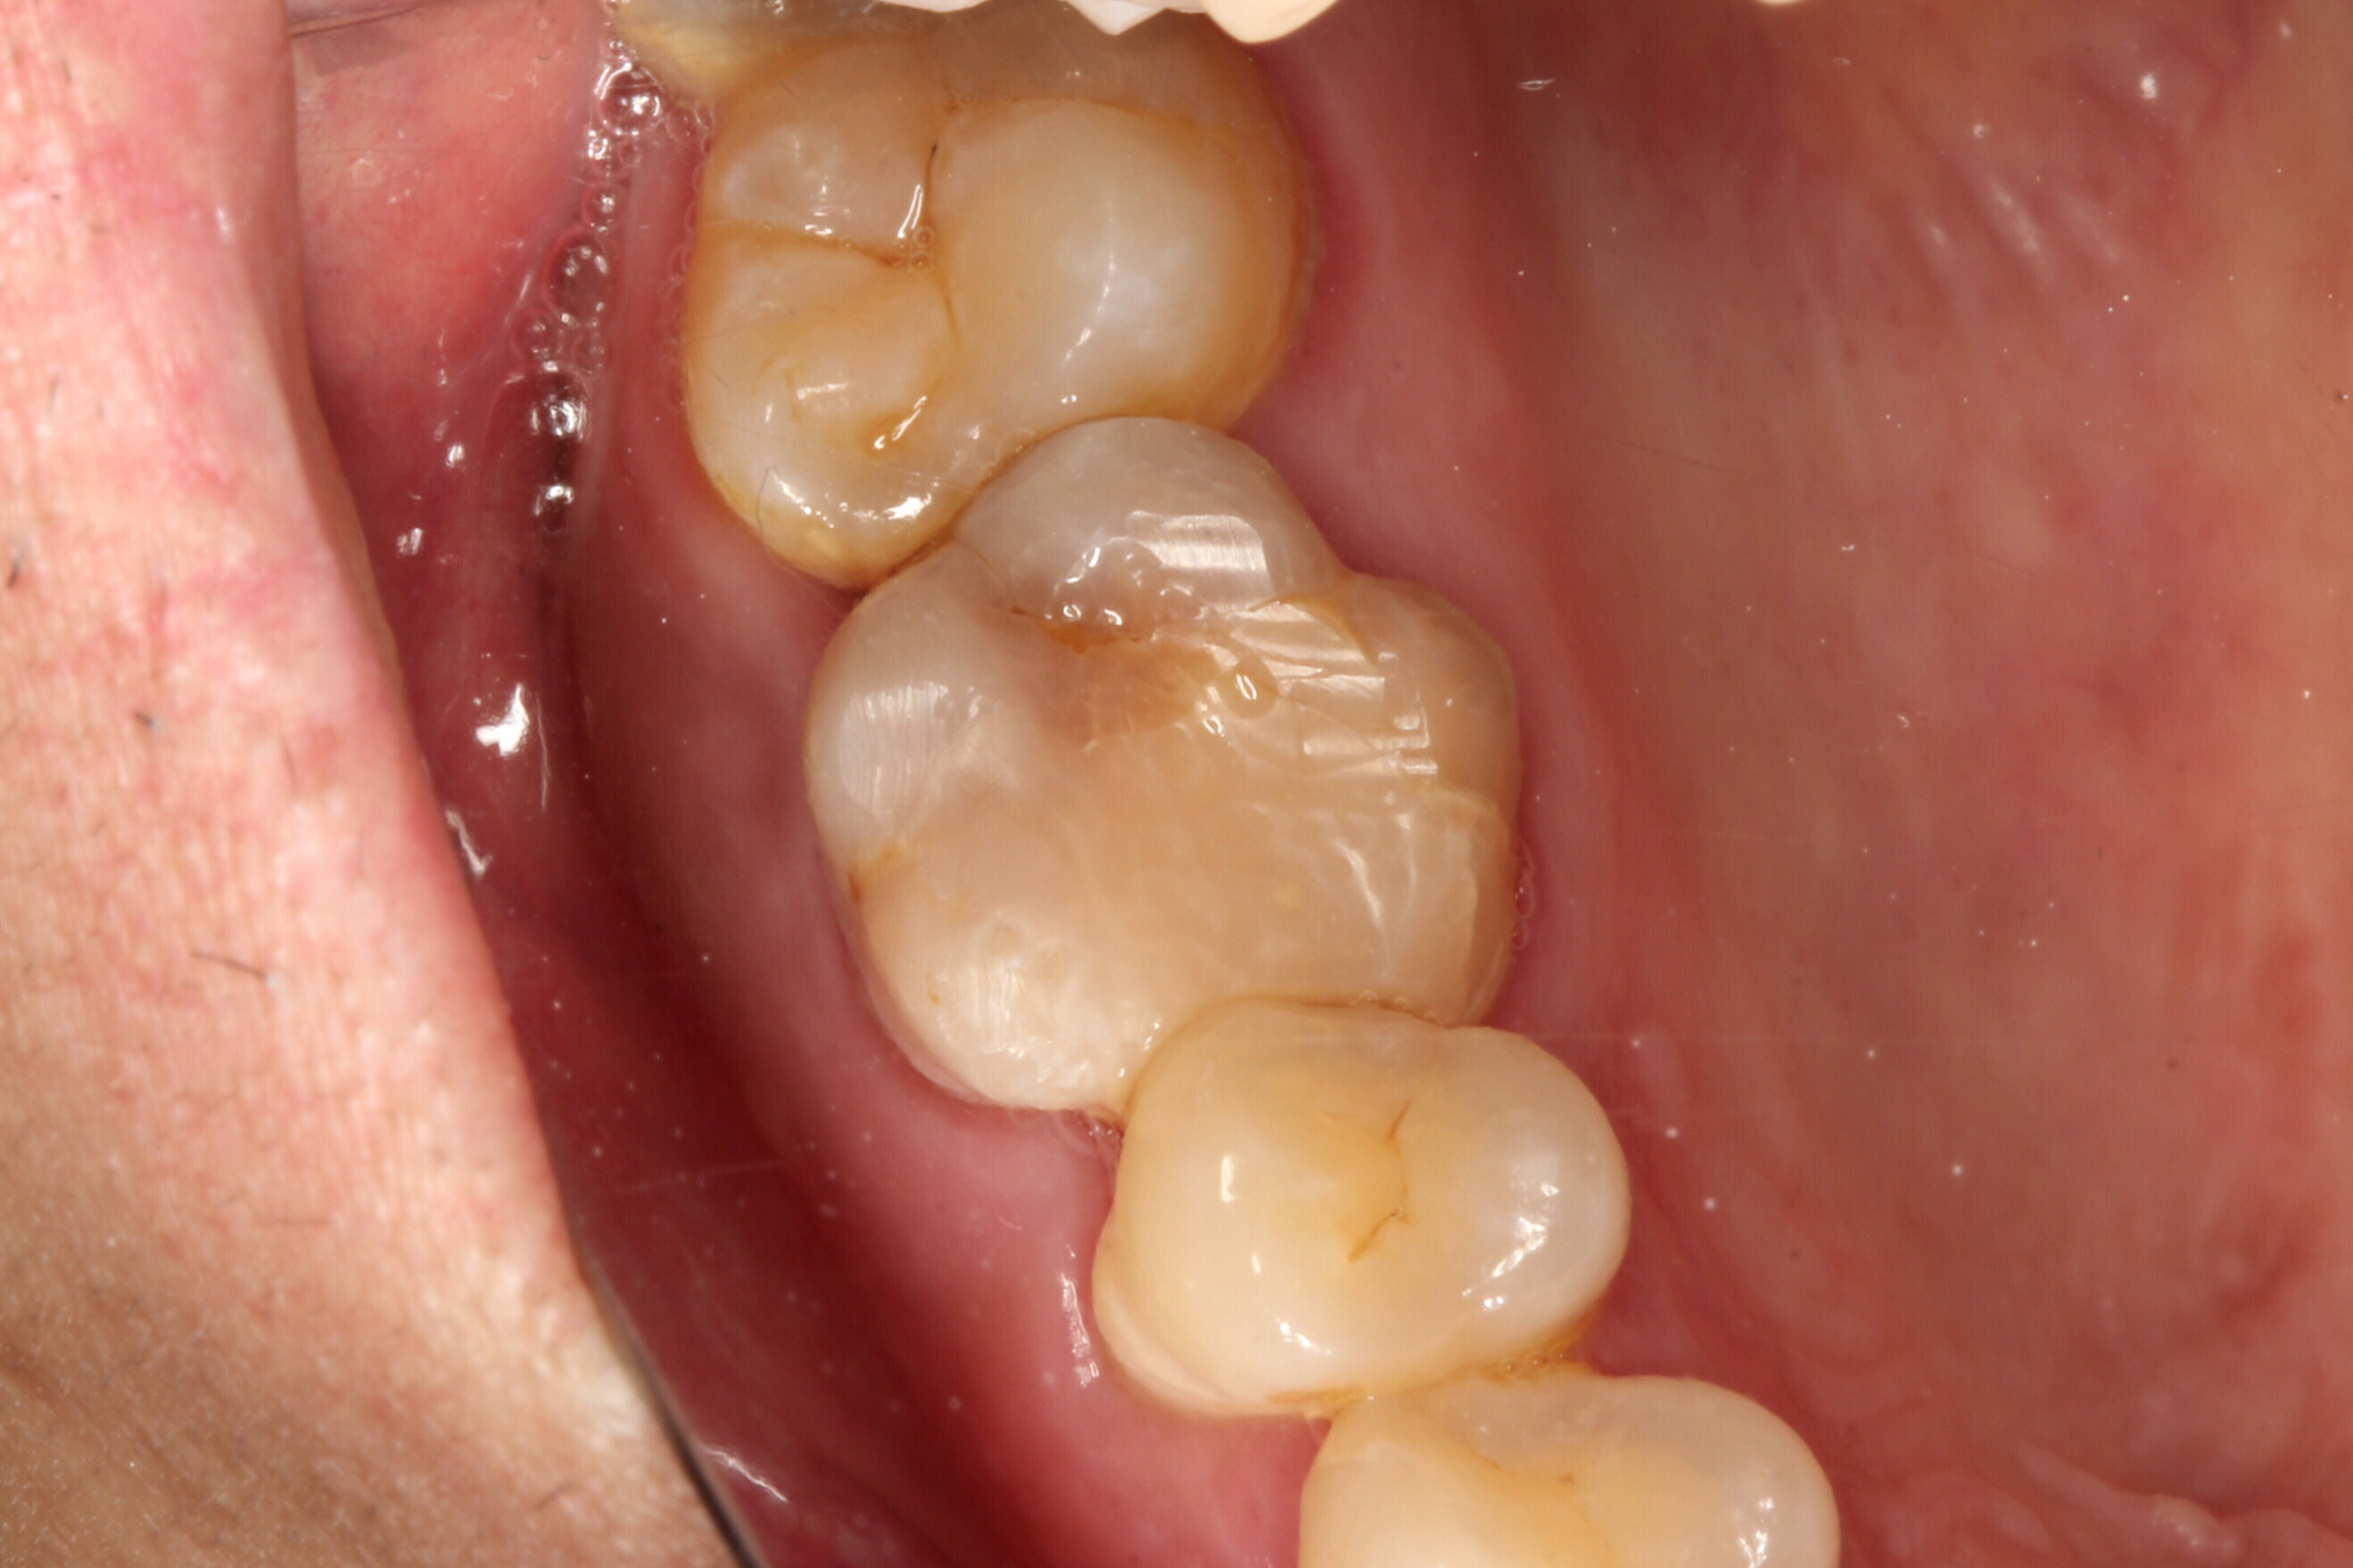 这就是牙根治疗的复杂性,很强烈的技术性,治疗牙根不是简简单单,补